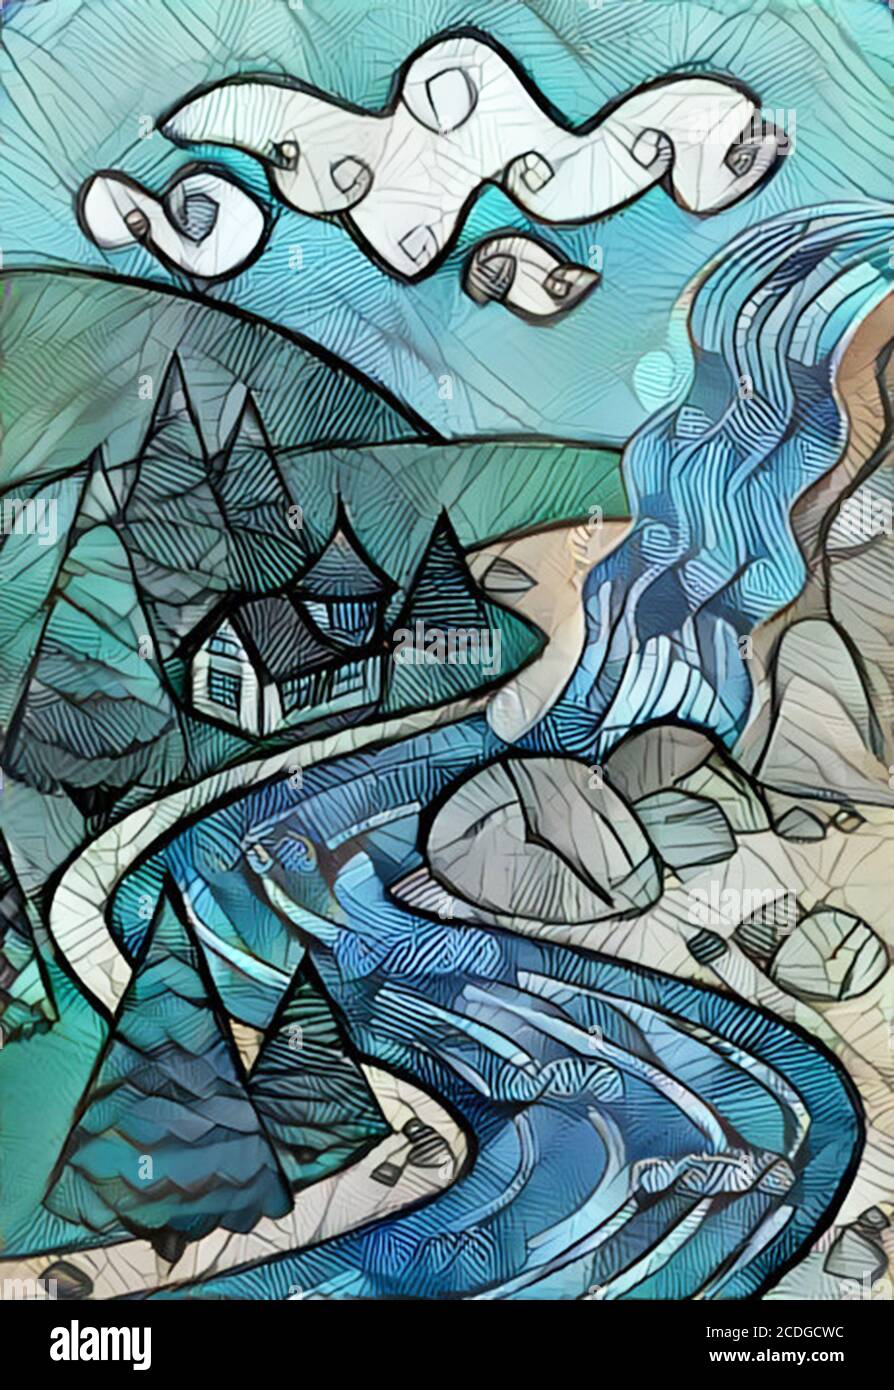 Illustration du paysage de la nature - chute d'eau, rivière, montagnes et la belle maison. Art coloré Banque D'Images